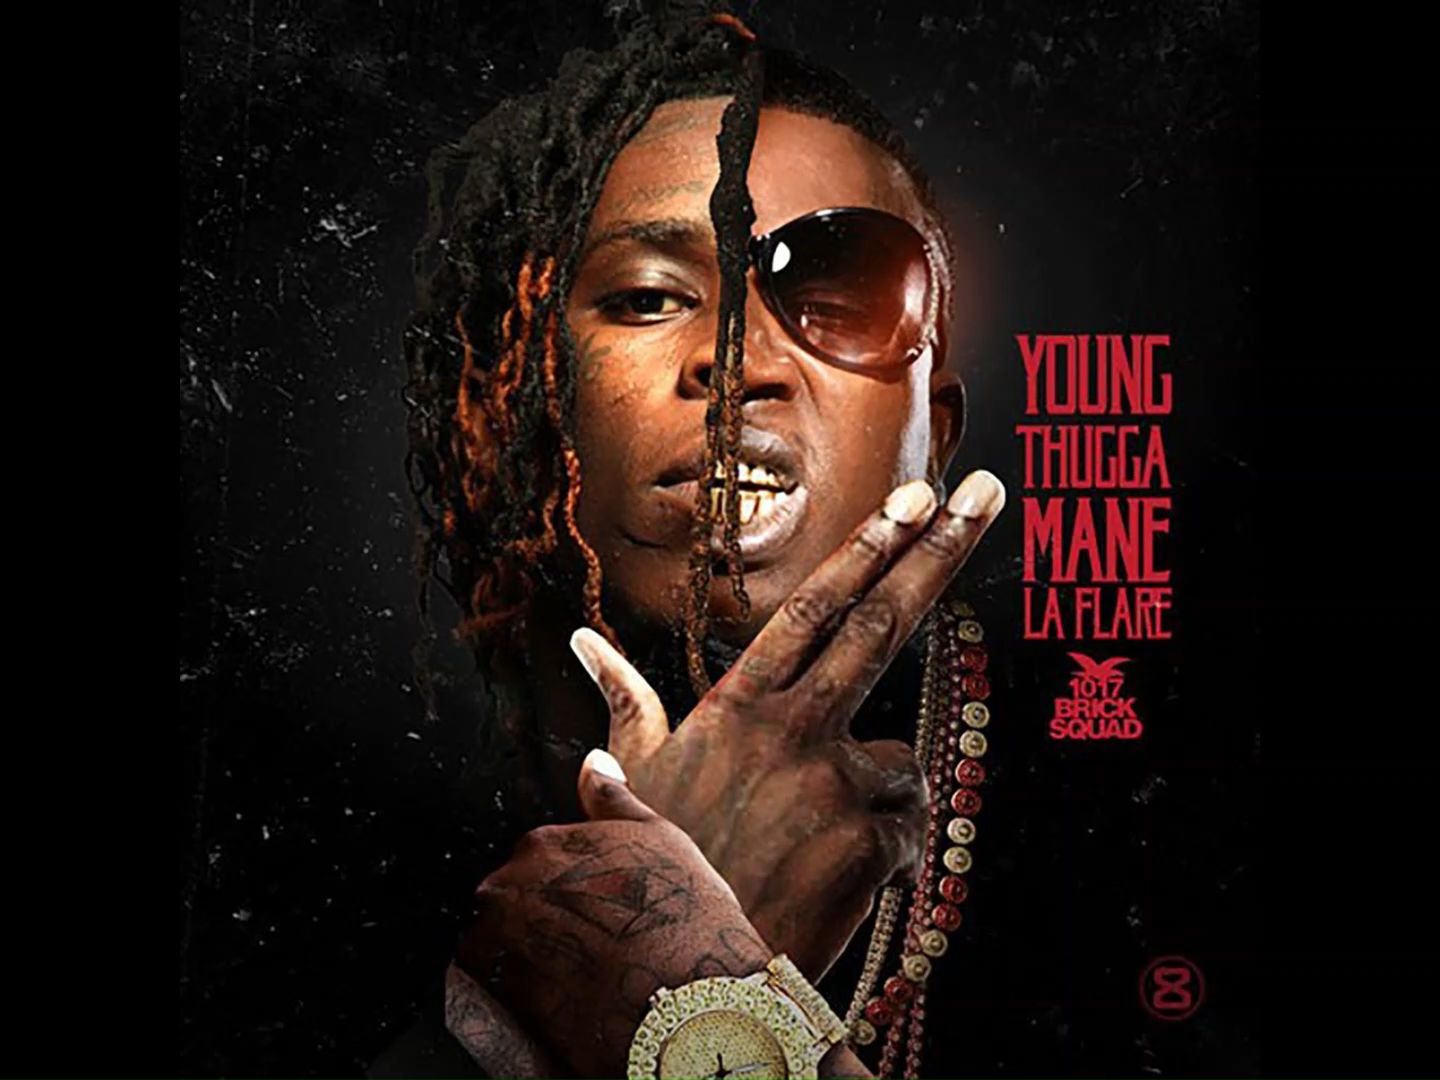 【无损】Gucci Mane & Young Thug专辑《Young Thugga Mane》全专试听